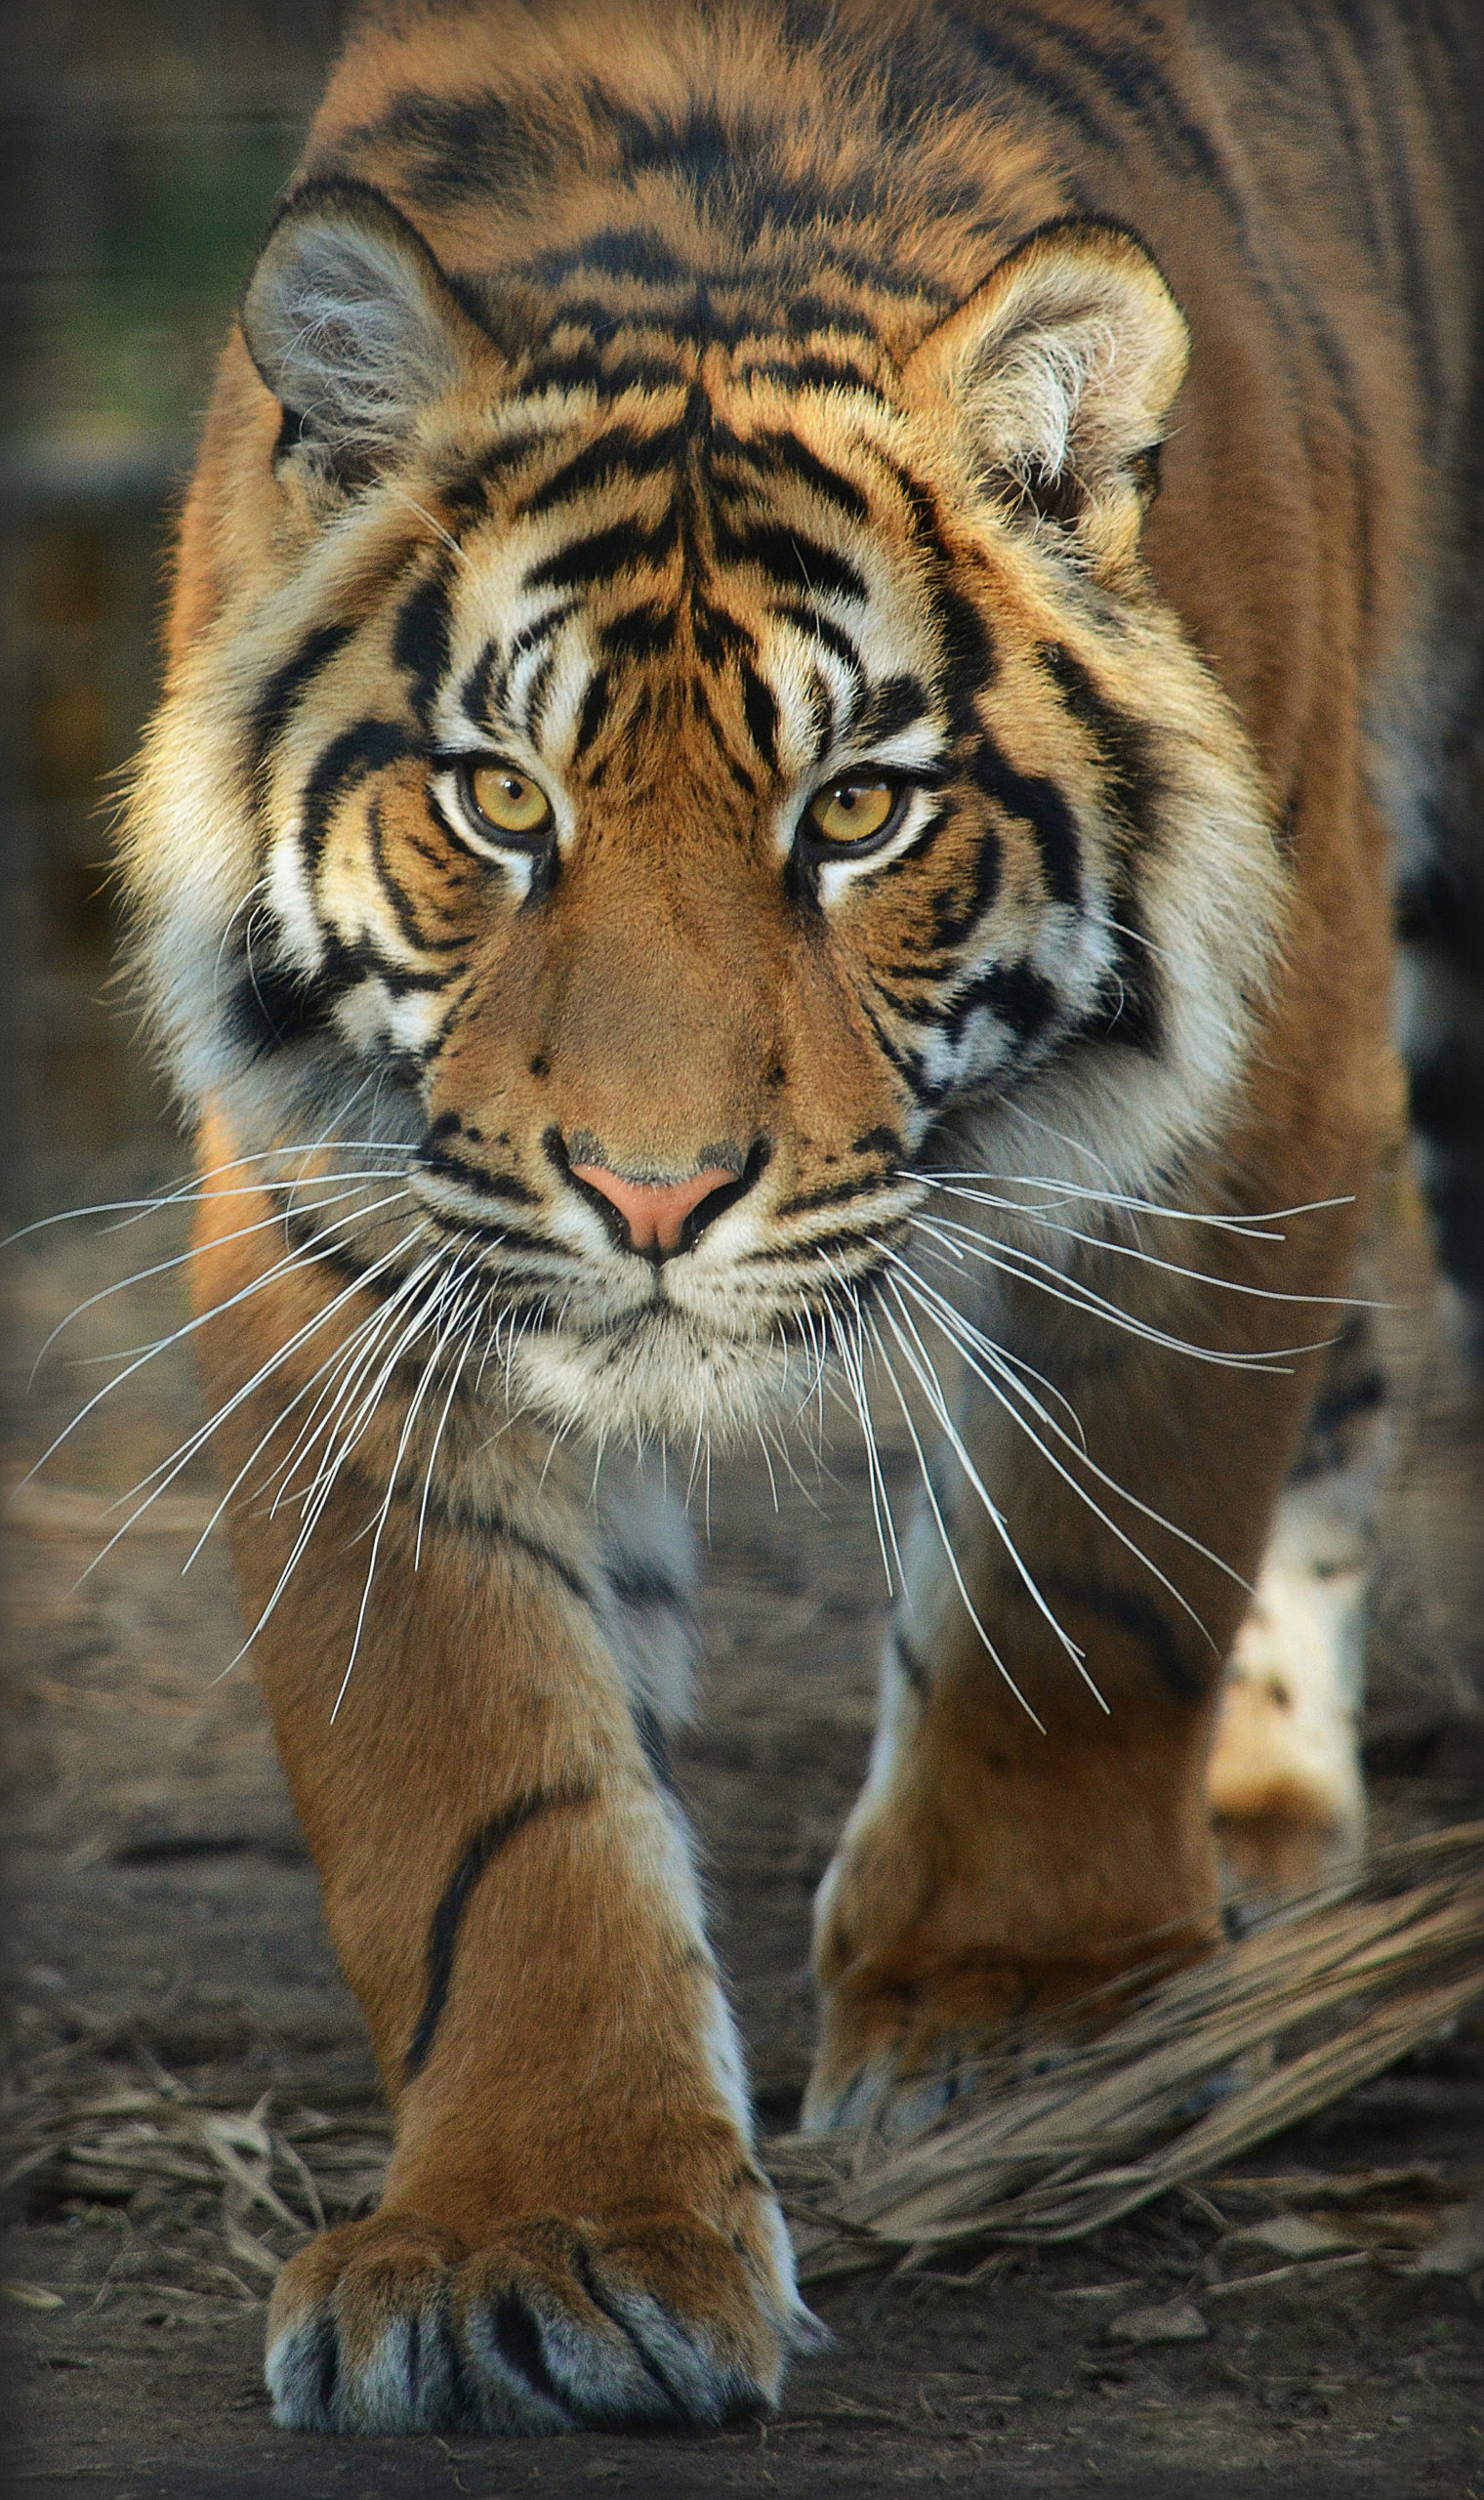 Sumatran tiger walking